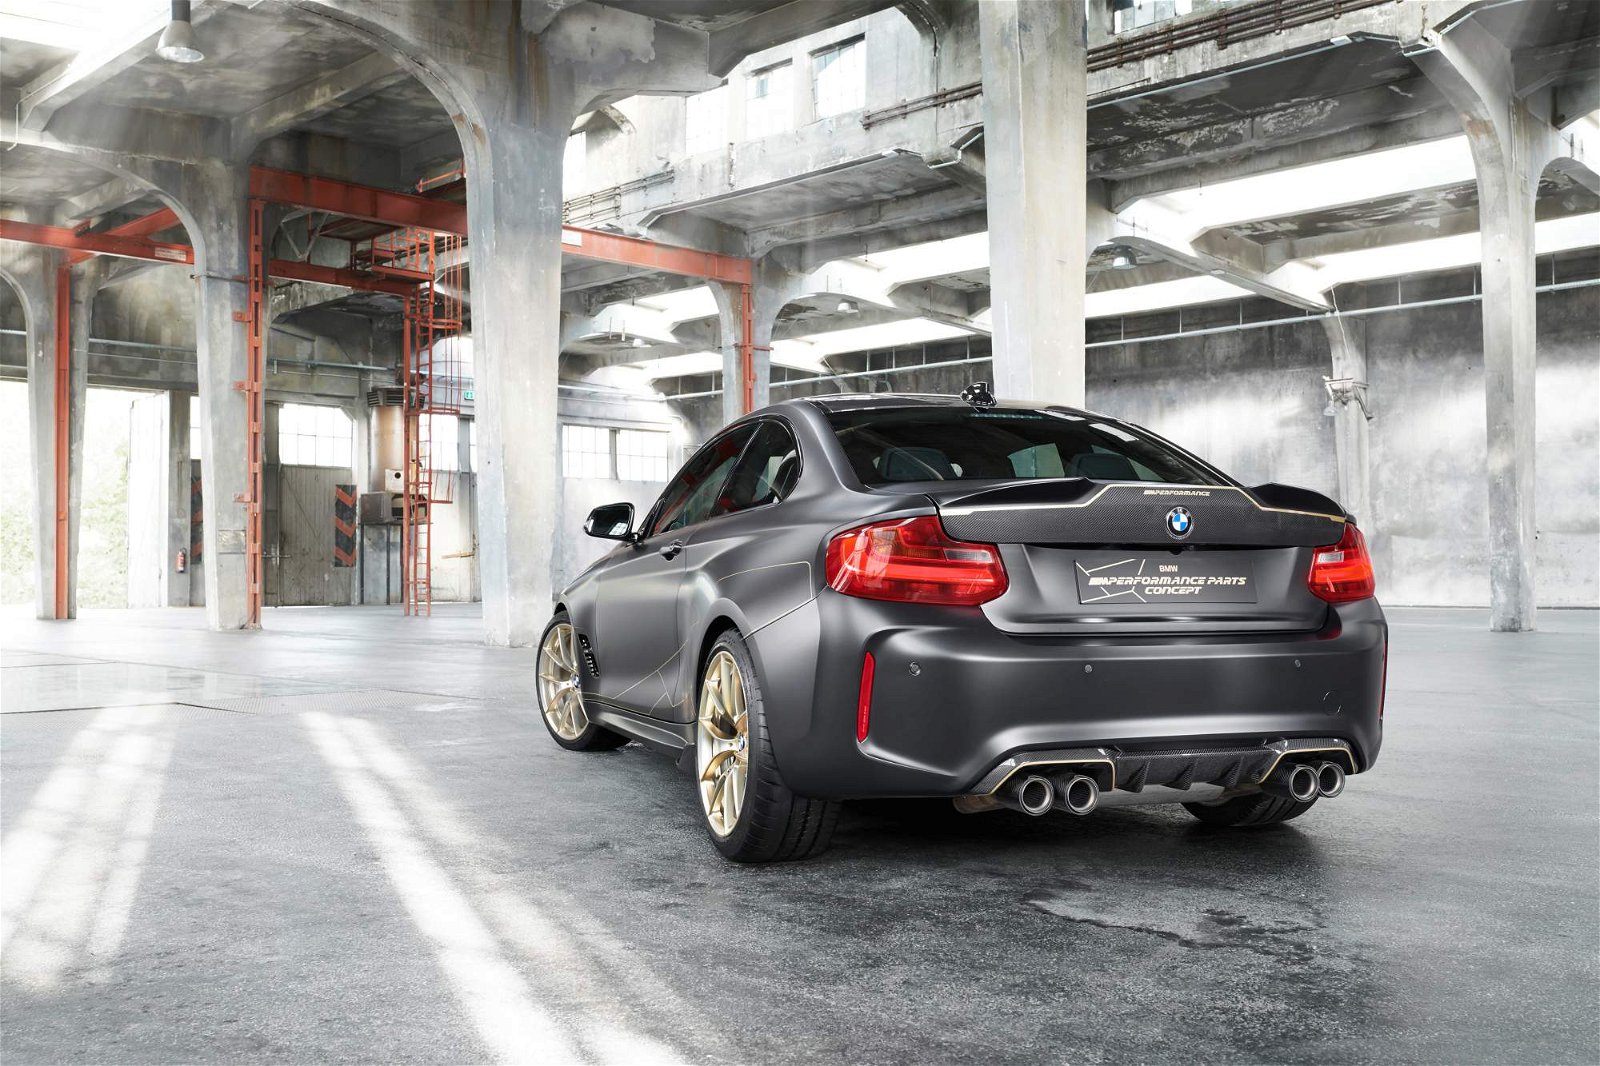 BMW-M-Performance-Parts-Concept-3